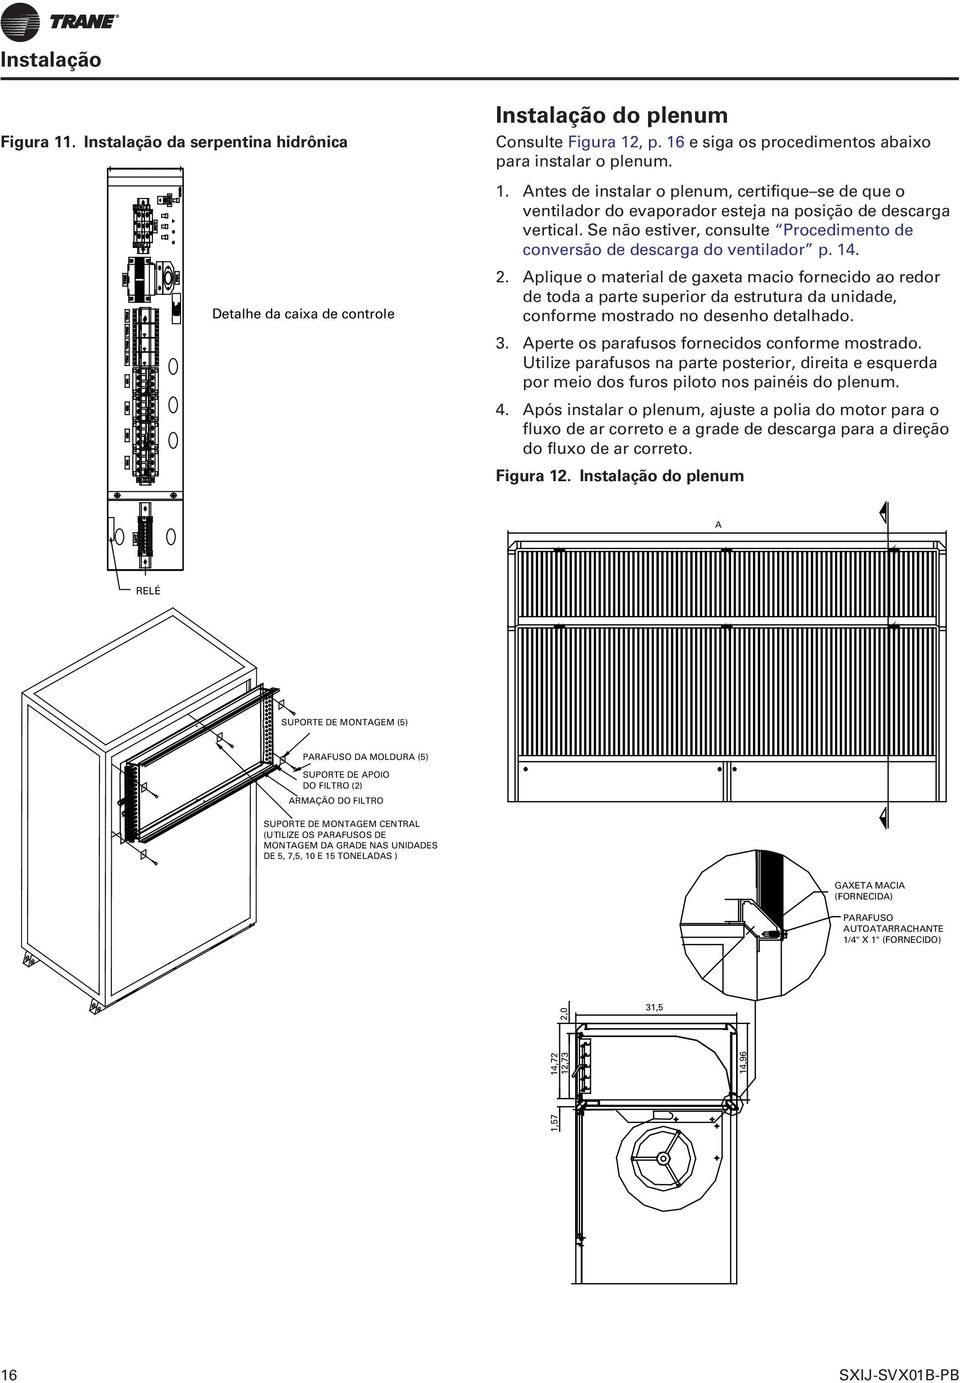 Instalação do plenum Consulte Figura 12, p. 16 e siga os procedimentos abaixo para instalar o plenum. 1. Antes de instalar o plenum, certifique se de que o ventilador do evaporador esteja na posição de descarga vertical.